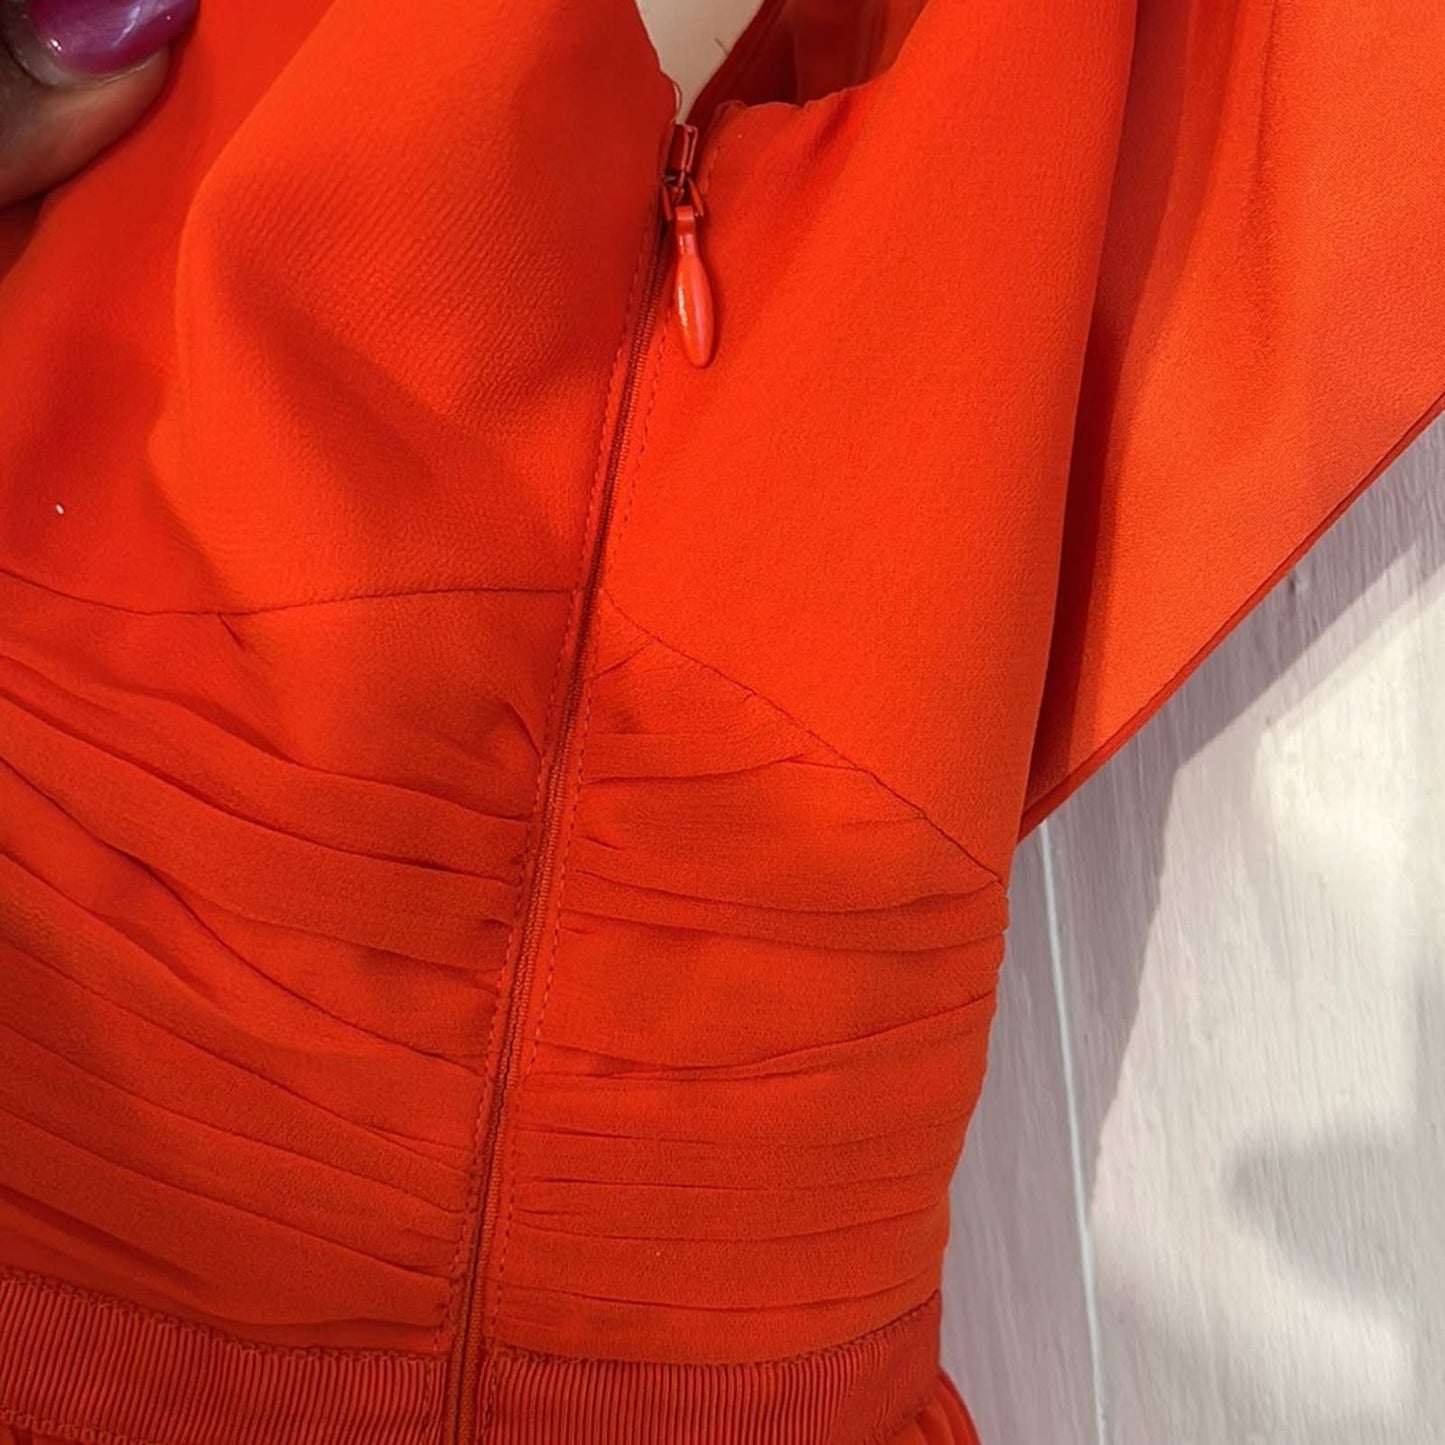 Self-Portrait Orange Off the Shoulder Dress 2 NWOT